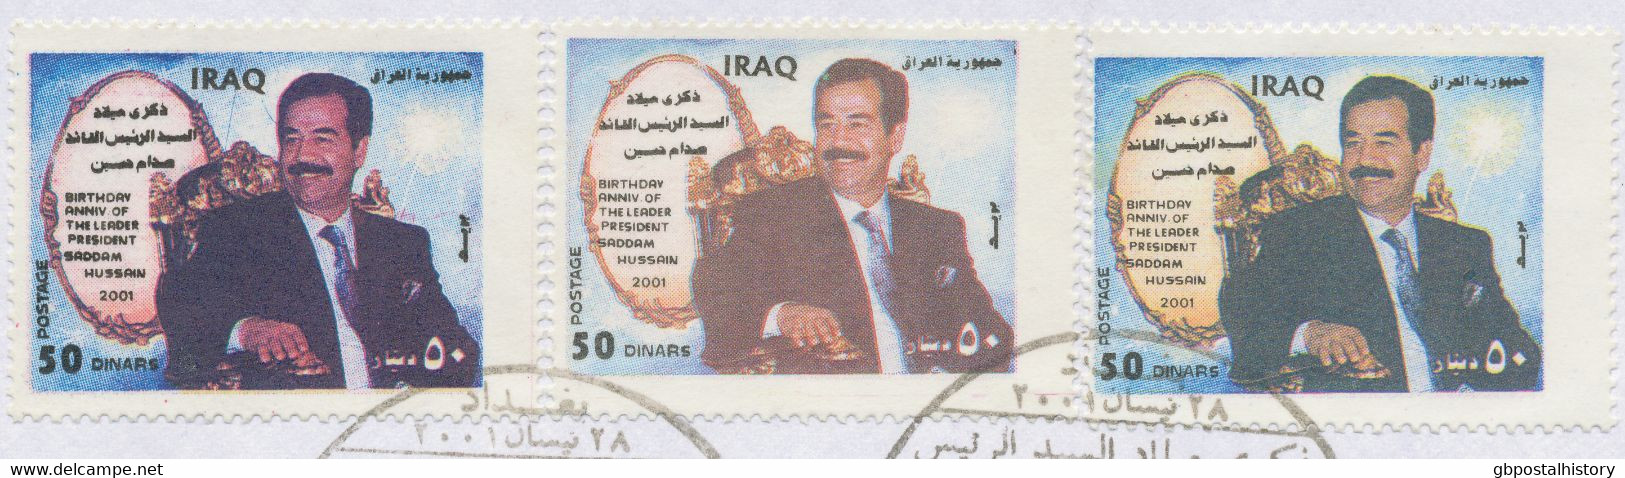 IRAK 2001, 28. April. 64. Geburtstag Von Saddam Hussein, 50 D Saddam Im Schwarzen Anzug (3 X) A. Kab.-FDC, ABARTEN: - Iraq